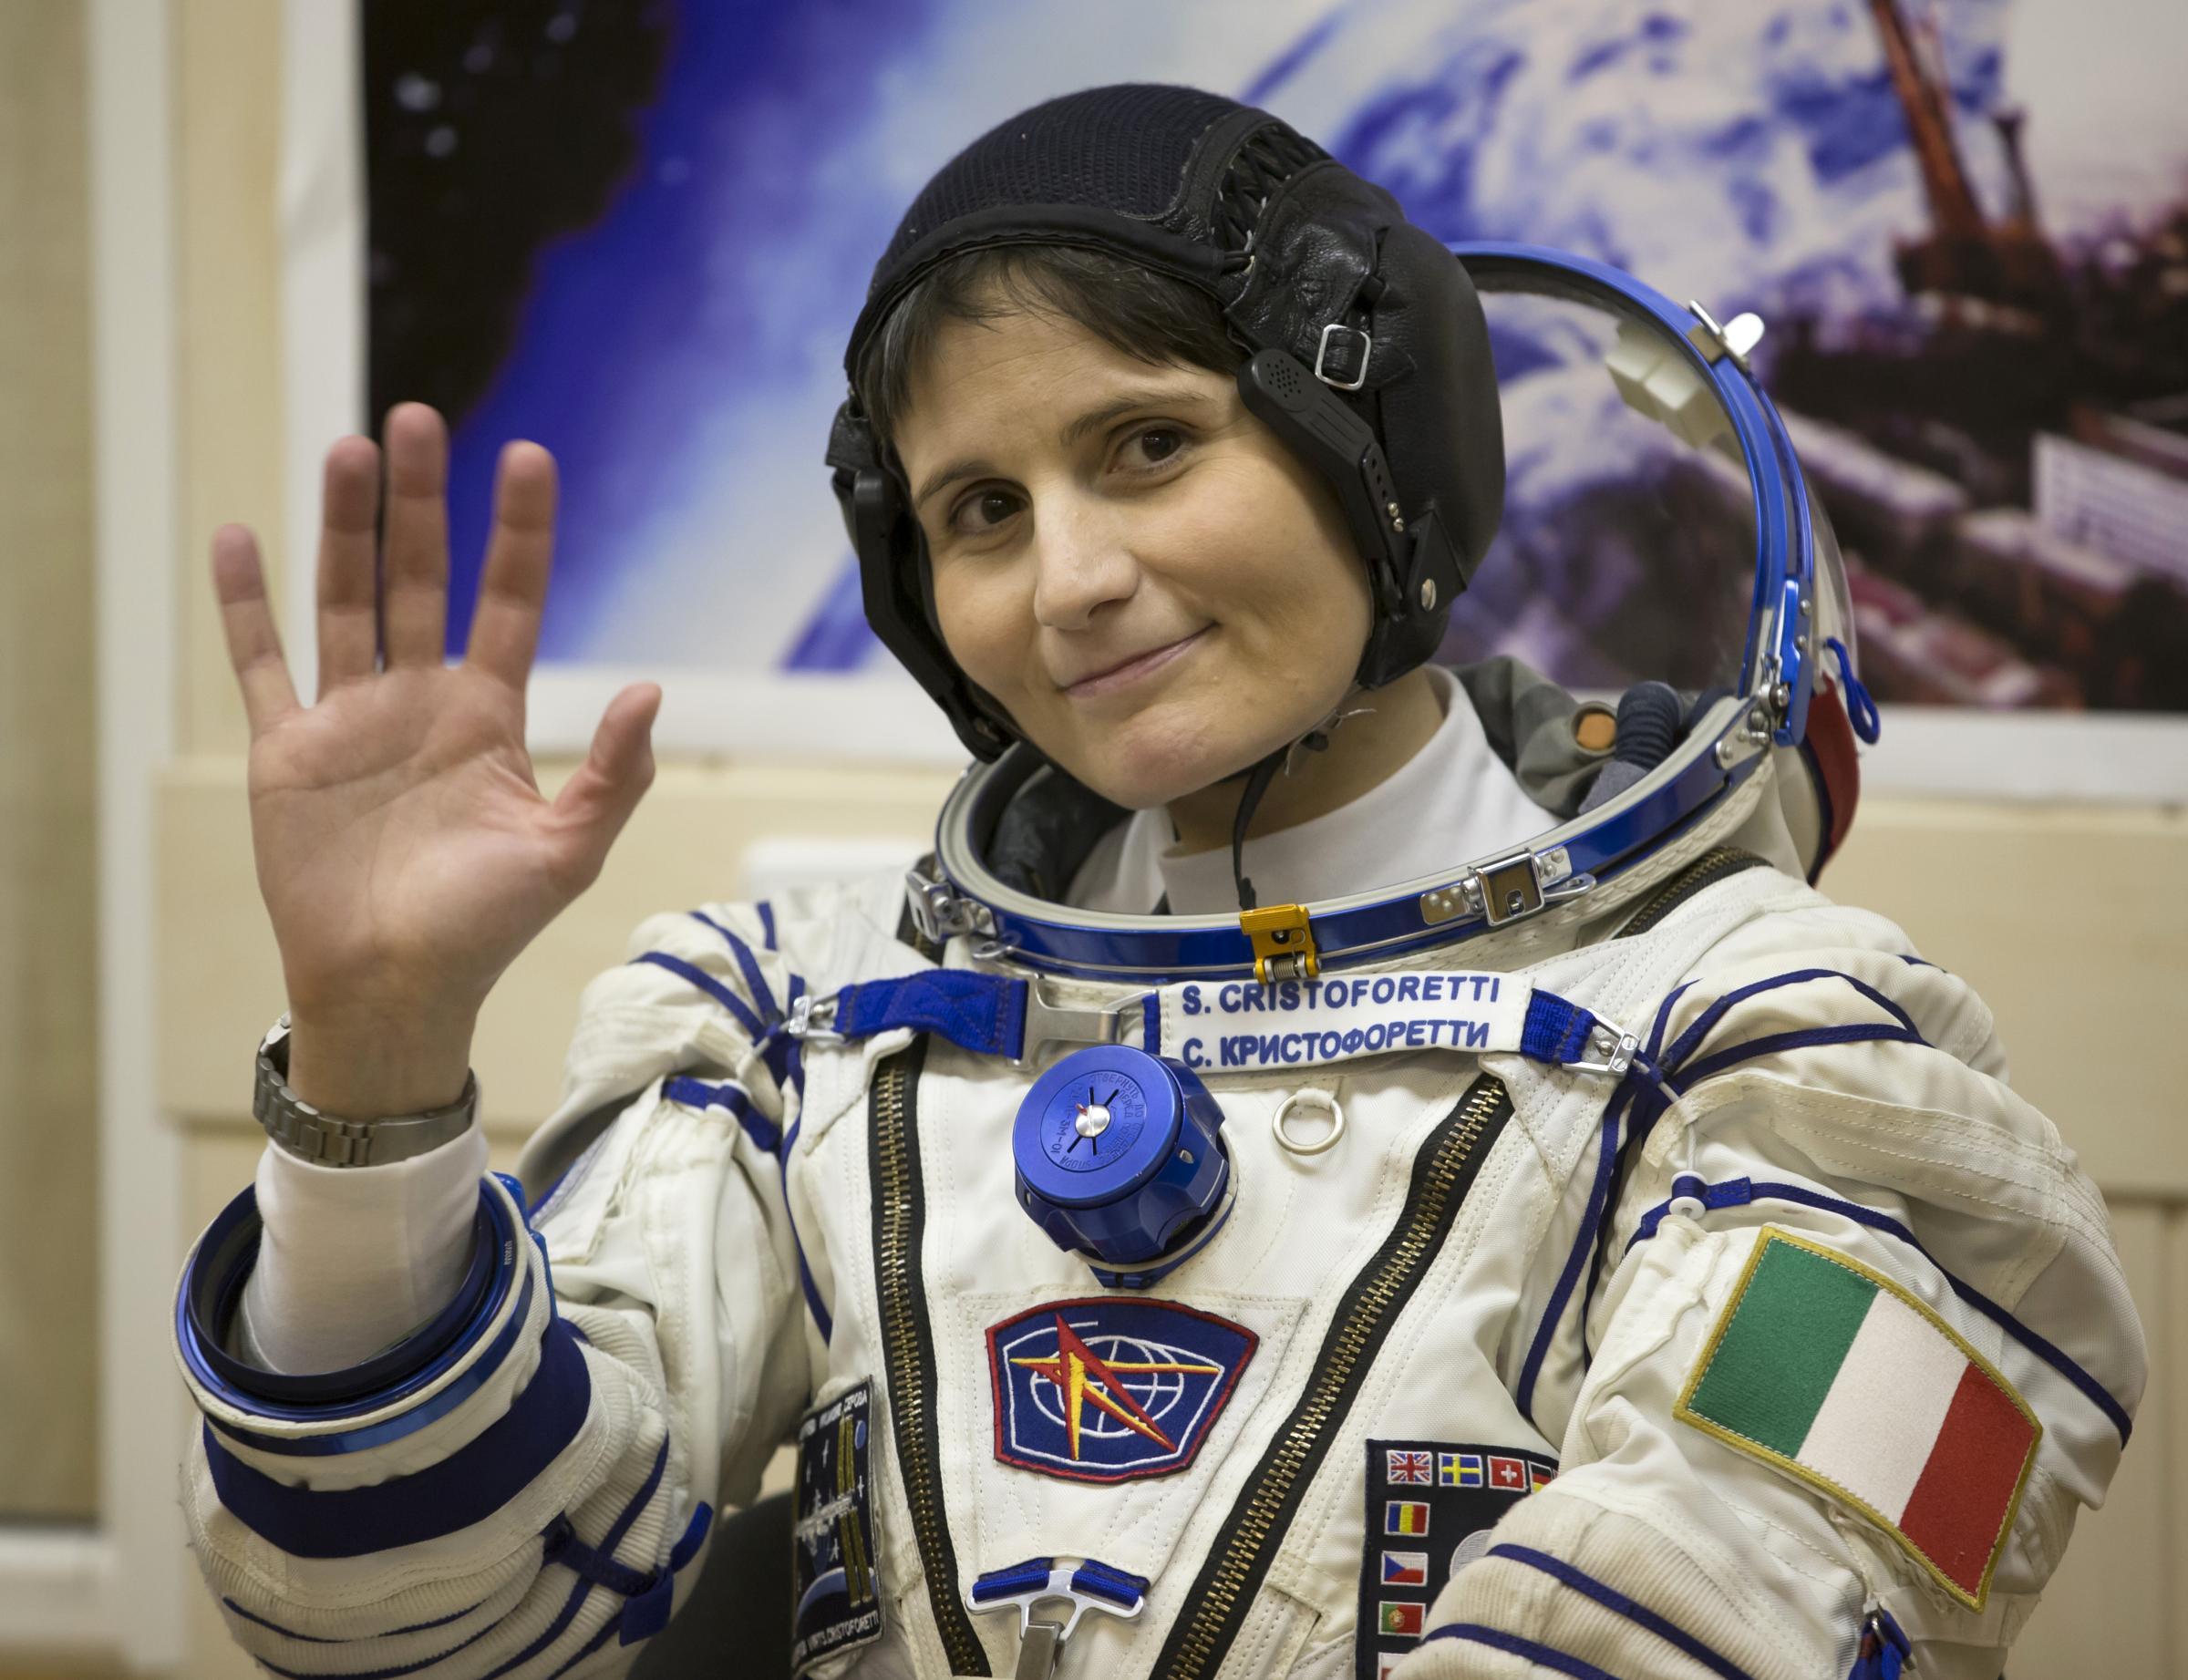 Samantha Cristoforetti è arrivata alla ISS: inizia la missione Futura - Rai  News